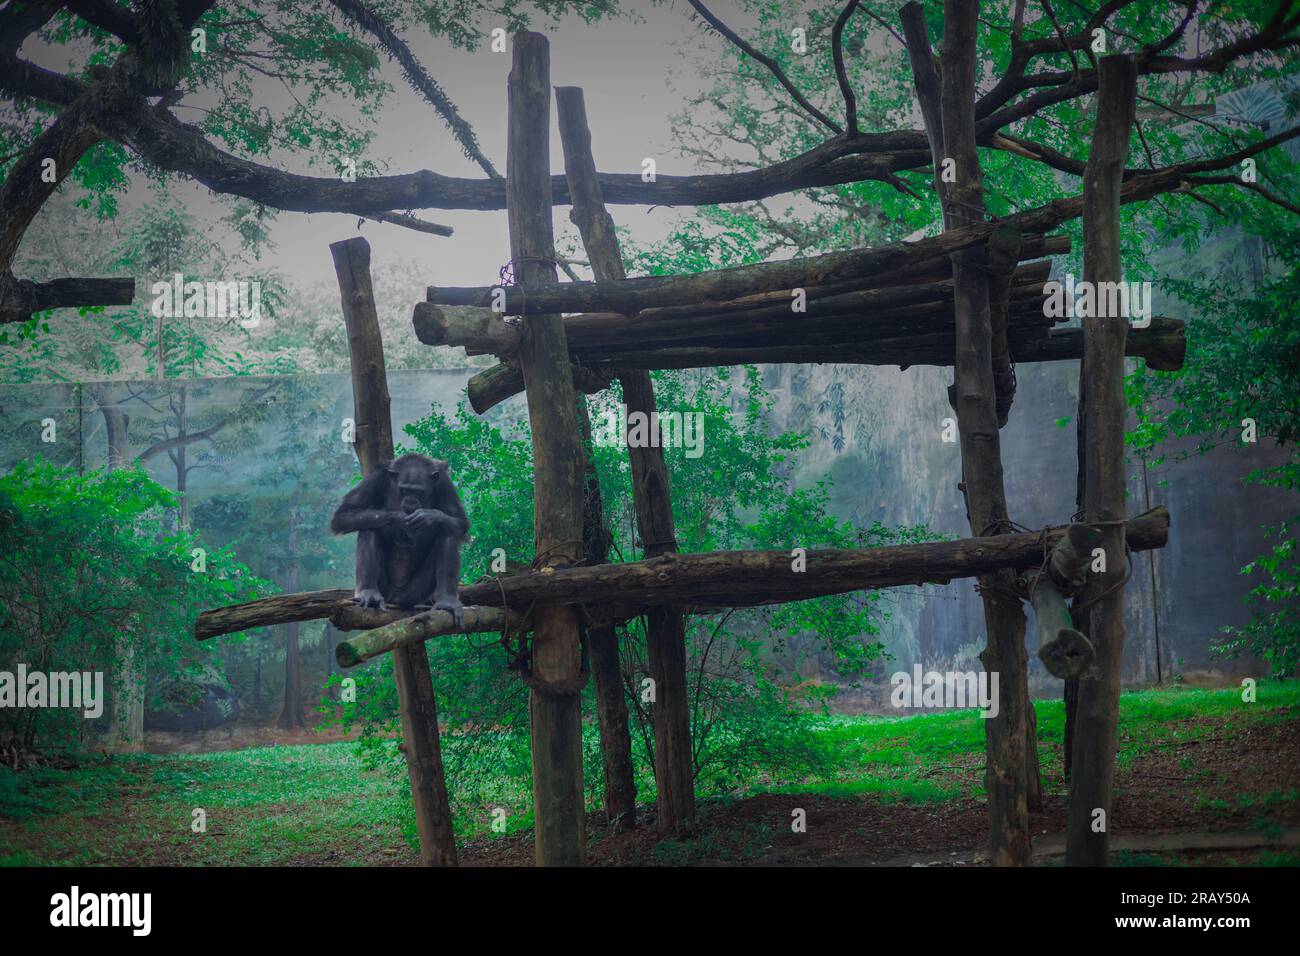 Chimpanzee sitting, Mature chimpanzee perches on a wood branch Stock Photo